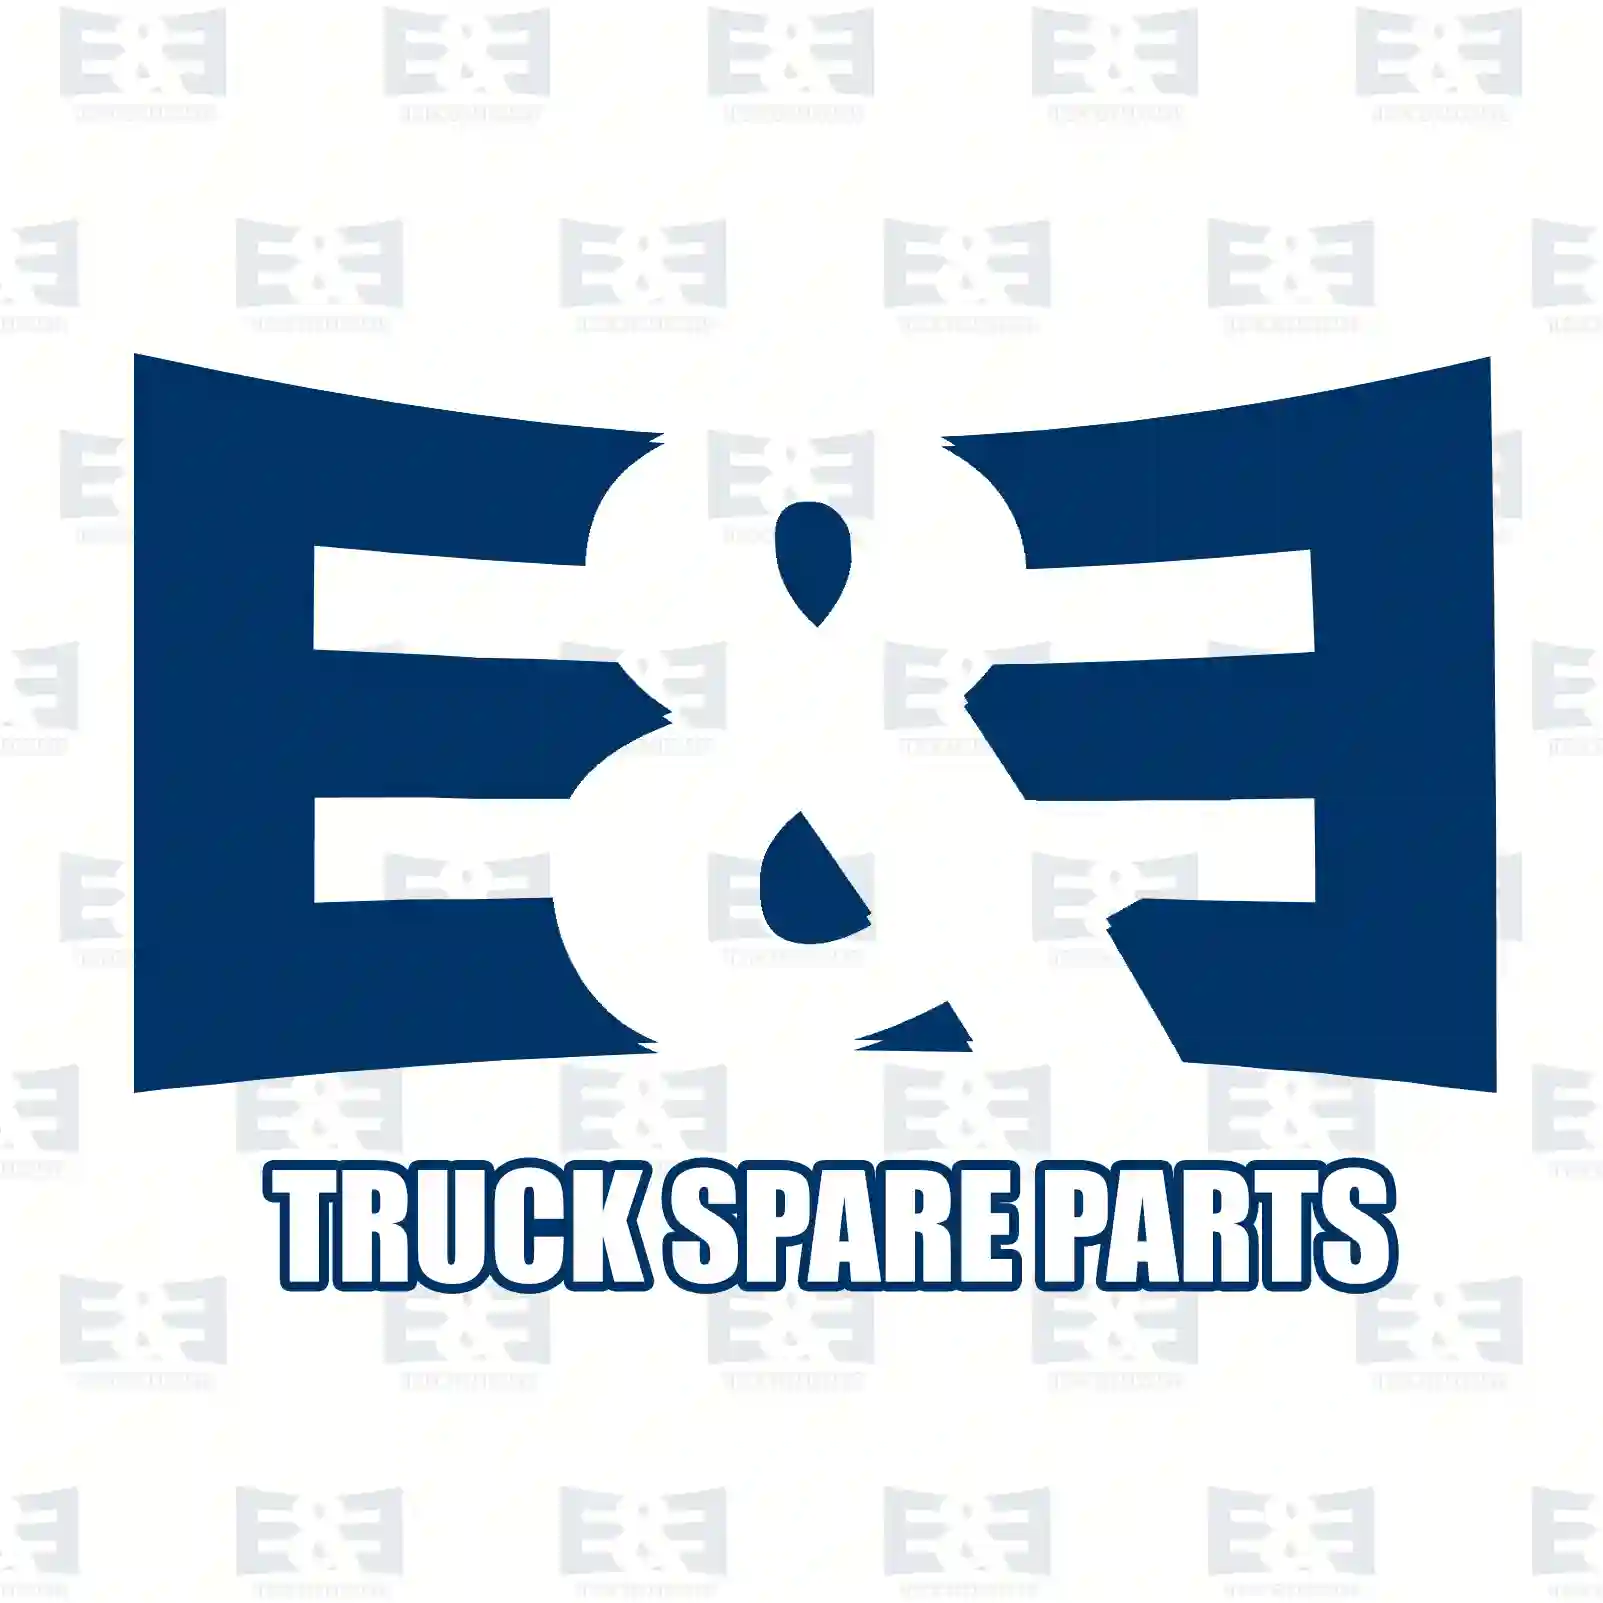 Solenoid switch, 2E2298497, 583641, 09940843, 09941276, 60732118, 09940843, 09941276, 60732118, 22343-D9700, 23343-D9700, 583641, 7701033043, 7701043432, 046911287 ||  2E2298497 E&E Truck Spare Parts | Truck Spare Parts, Auotomotive Spare Parts Solenoid switch, 2E2298497, 583641, 09940843, 09941276, 60732118, 09940843, 09941276, 60732118, 22343-D9700, 23343-D9700, 583641, 7701033043, 7701043432, 046911287 ||  2E2298497 E&E Truck Spare Parts | Truck Spare Parts, Auotomotive Spare Parts